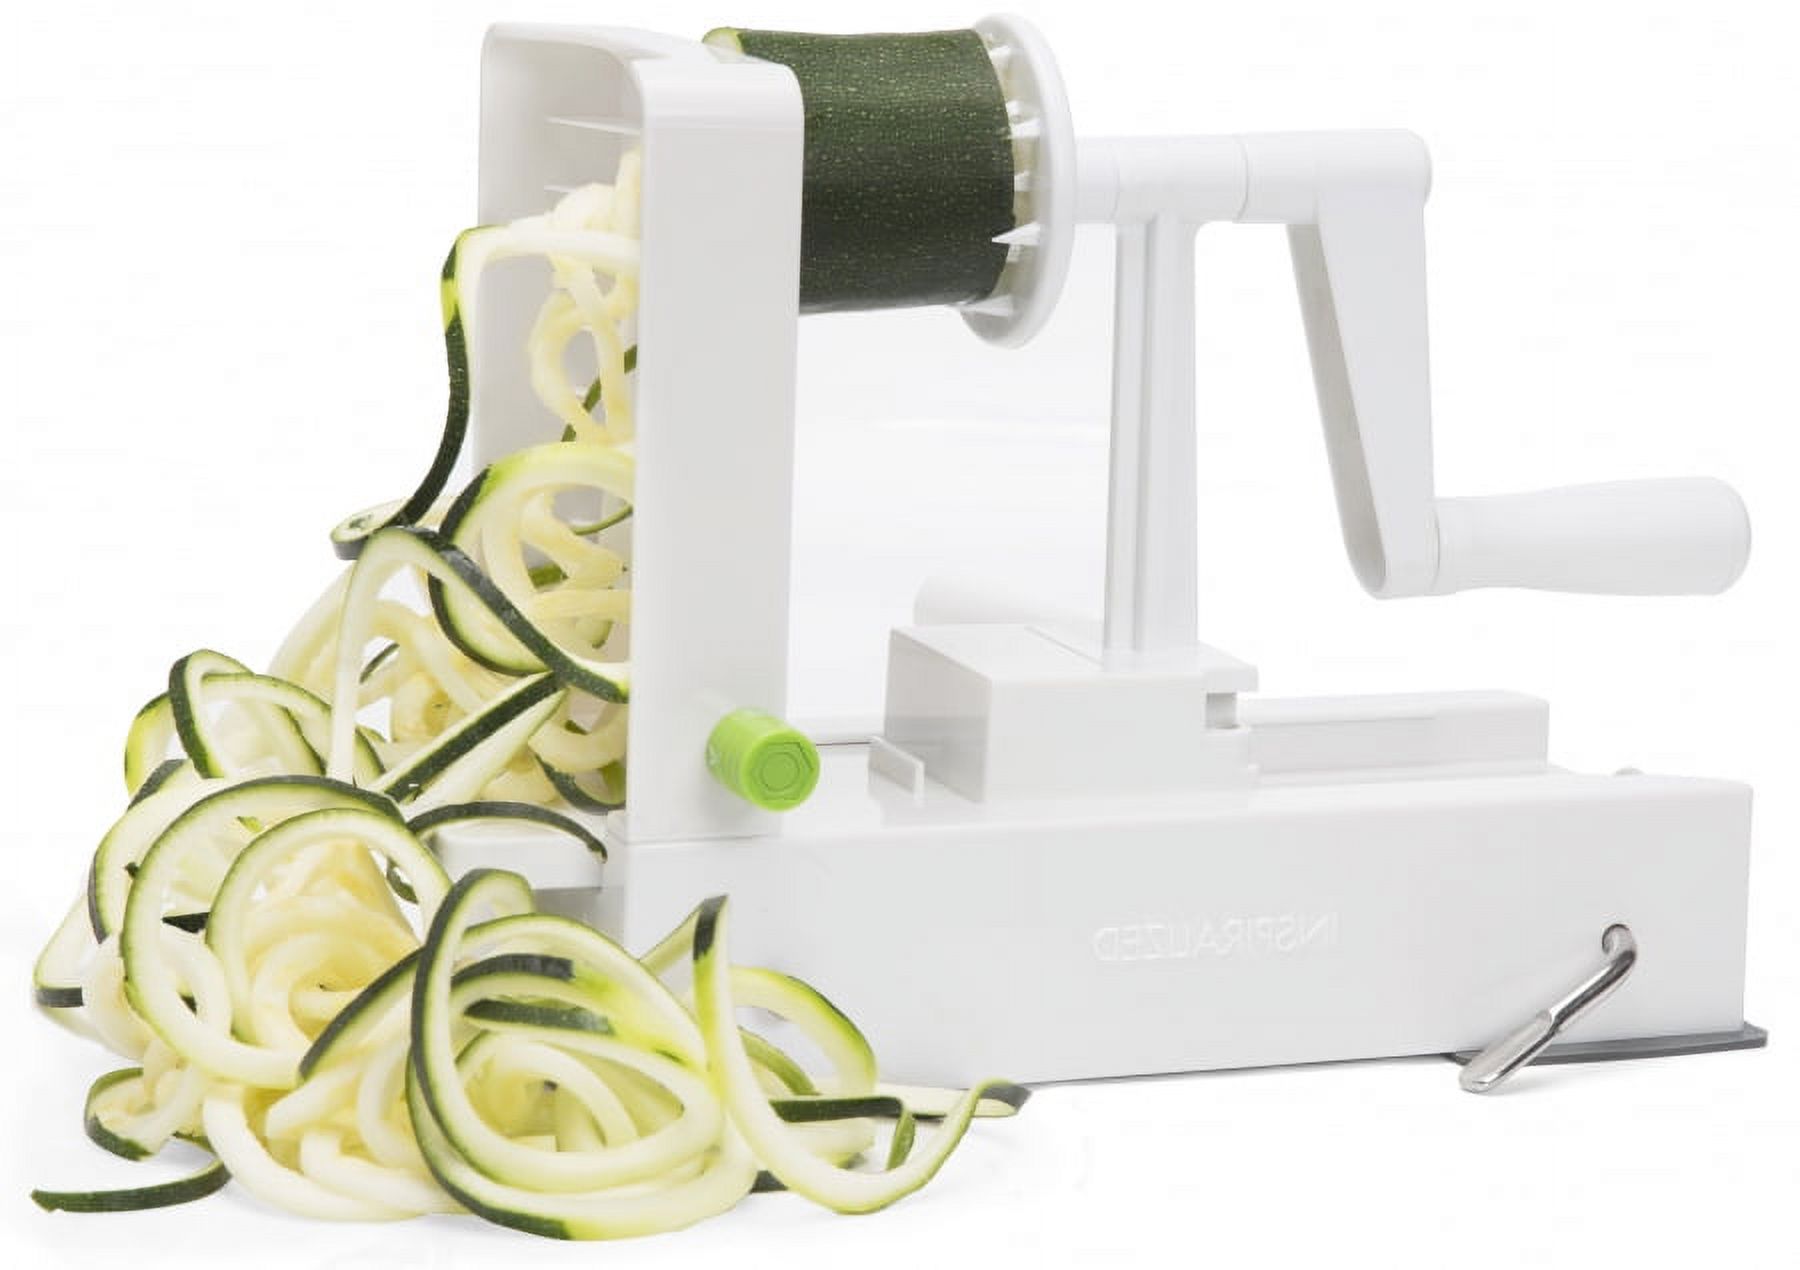 Inspiralized -Noodle Twister Sleek Stylish Vegetable Salads Slicer Noodles Maker - White Plastic - image 1 of 6